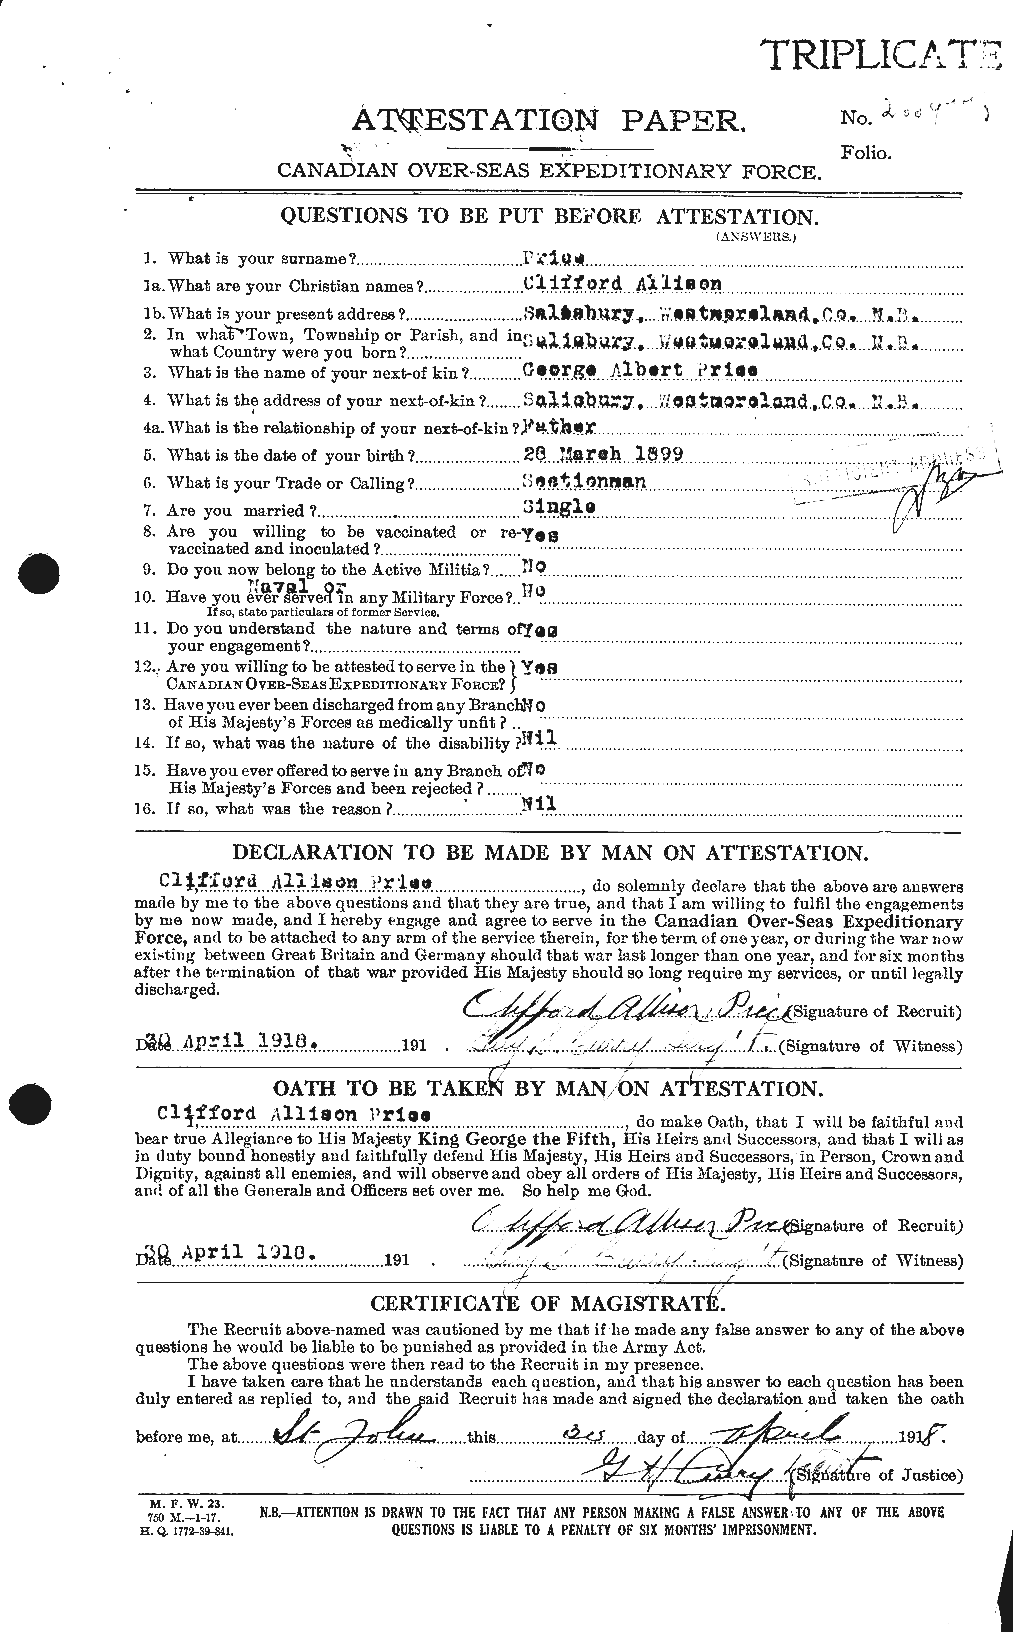 Dossiers du Personnel de la Première Guerre mondiale - CEC 587001a